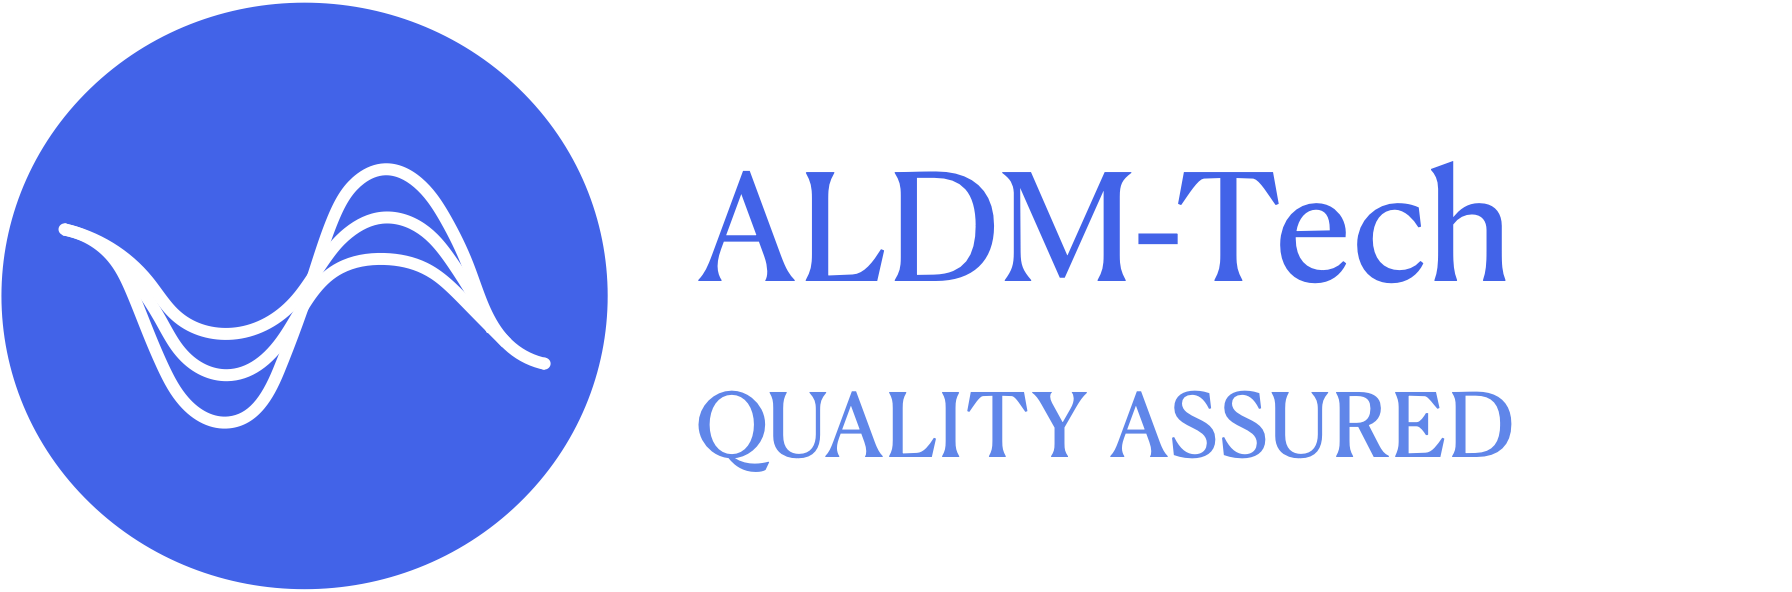 ALDM-Tech